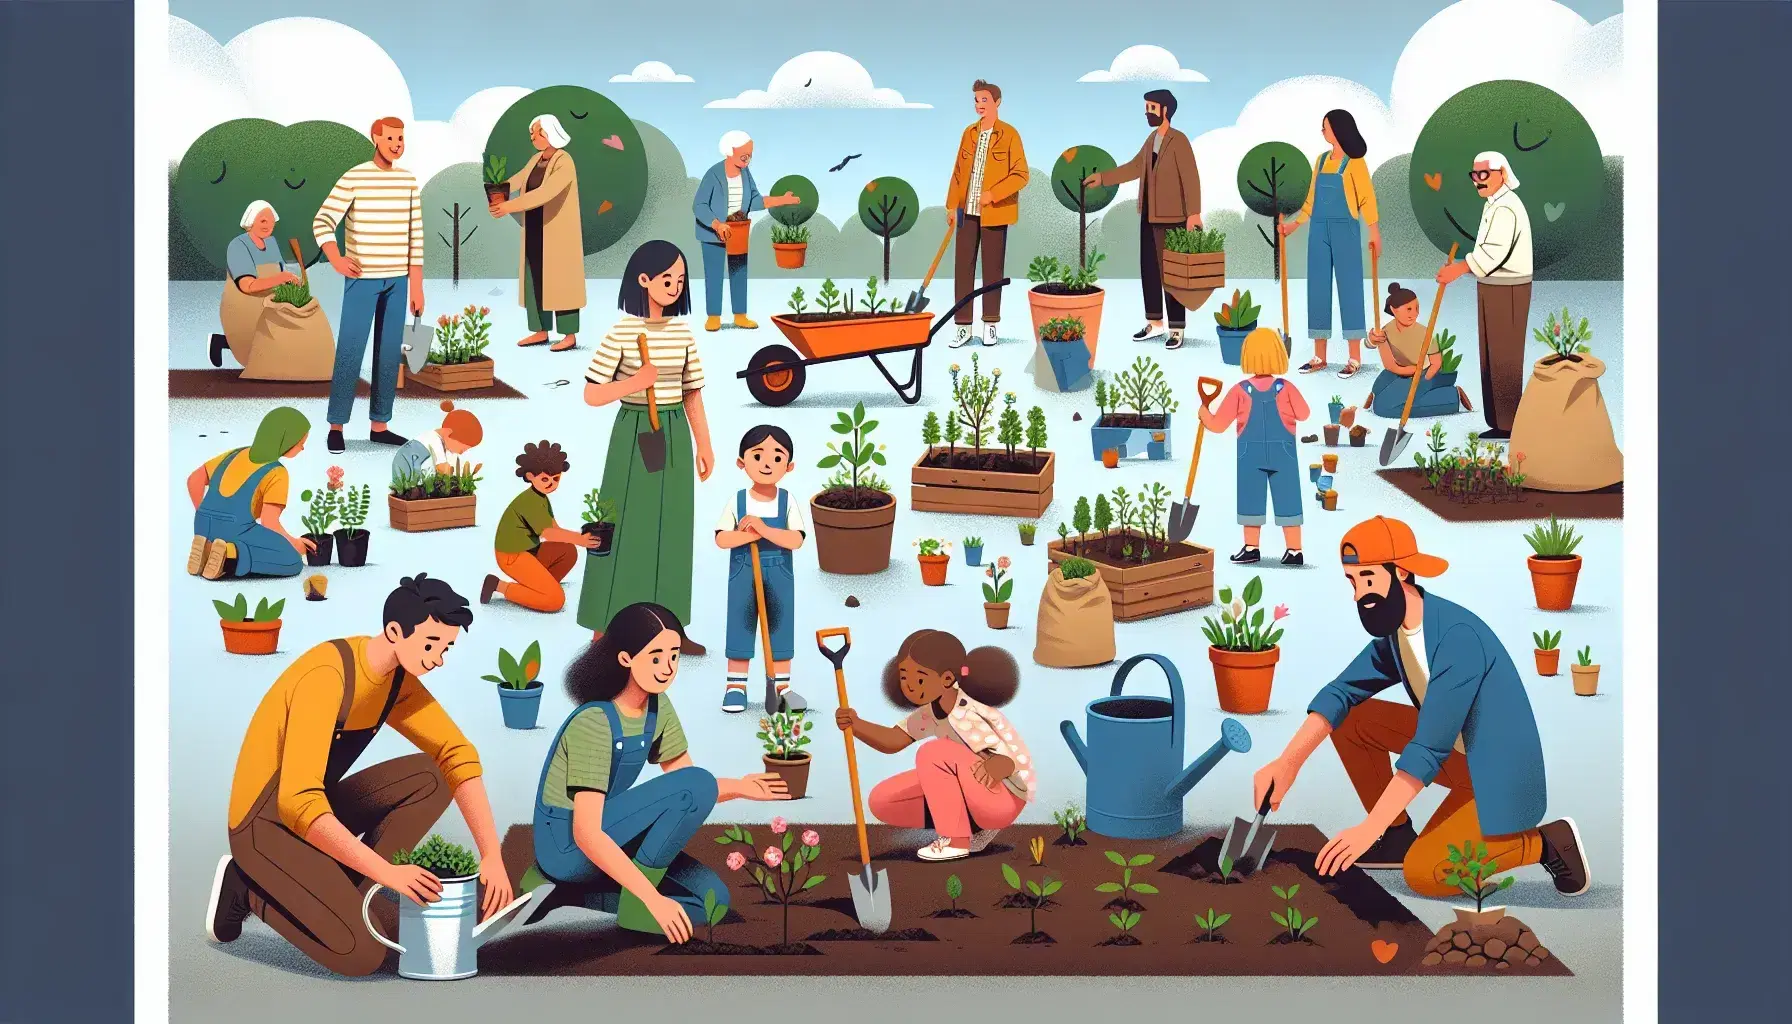 Grupo diverso participando en jardinería comunitaria, con mujer sonriente y niños plantando y regando bajo cielo azul.